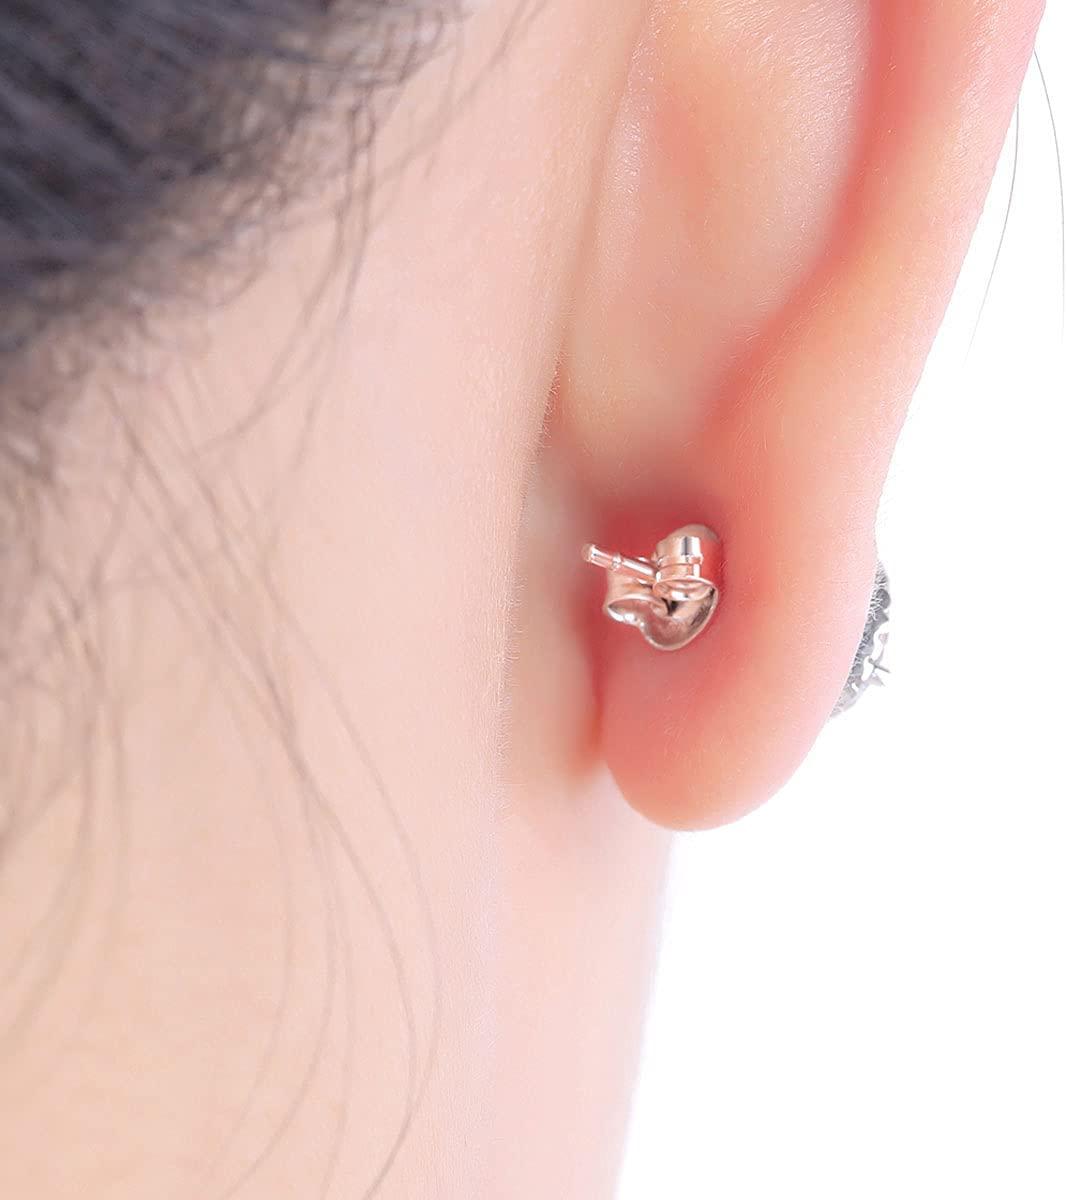 Locking Earring Backs Studs  Hypoallergenic Earring Findings